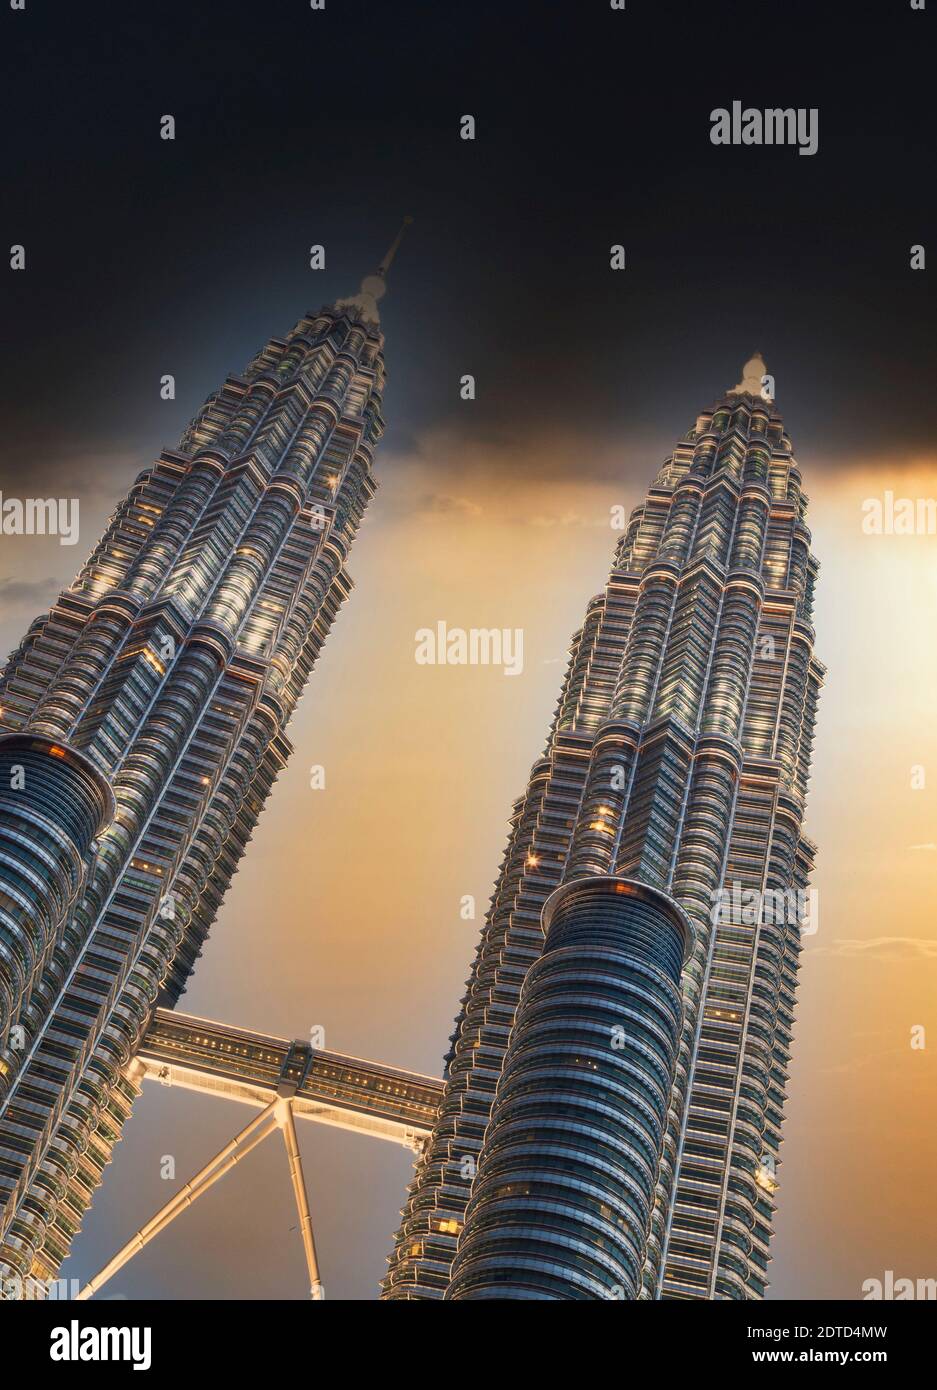 Malaysia, Kuala Lumpur, Night view of Petronas Towers Stock Photo